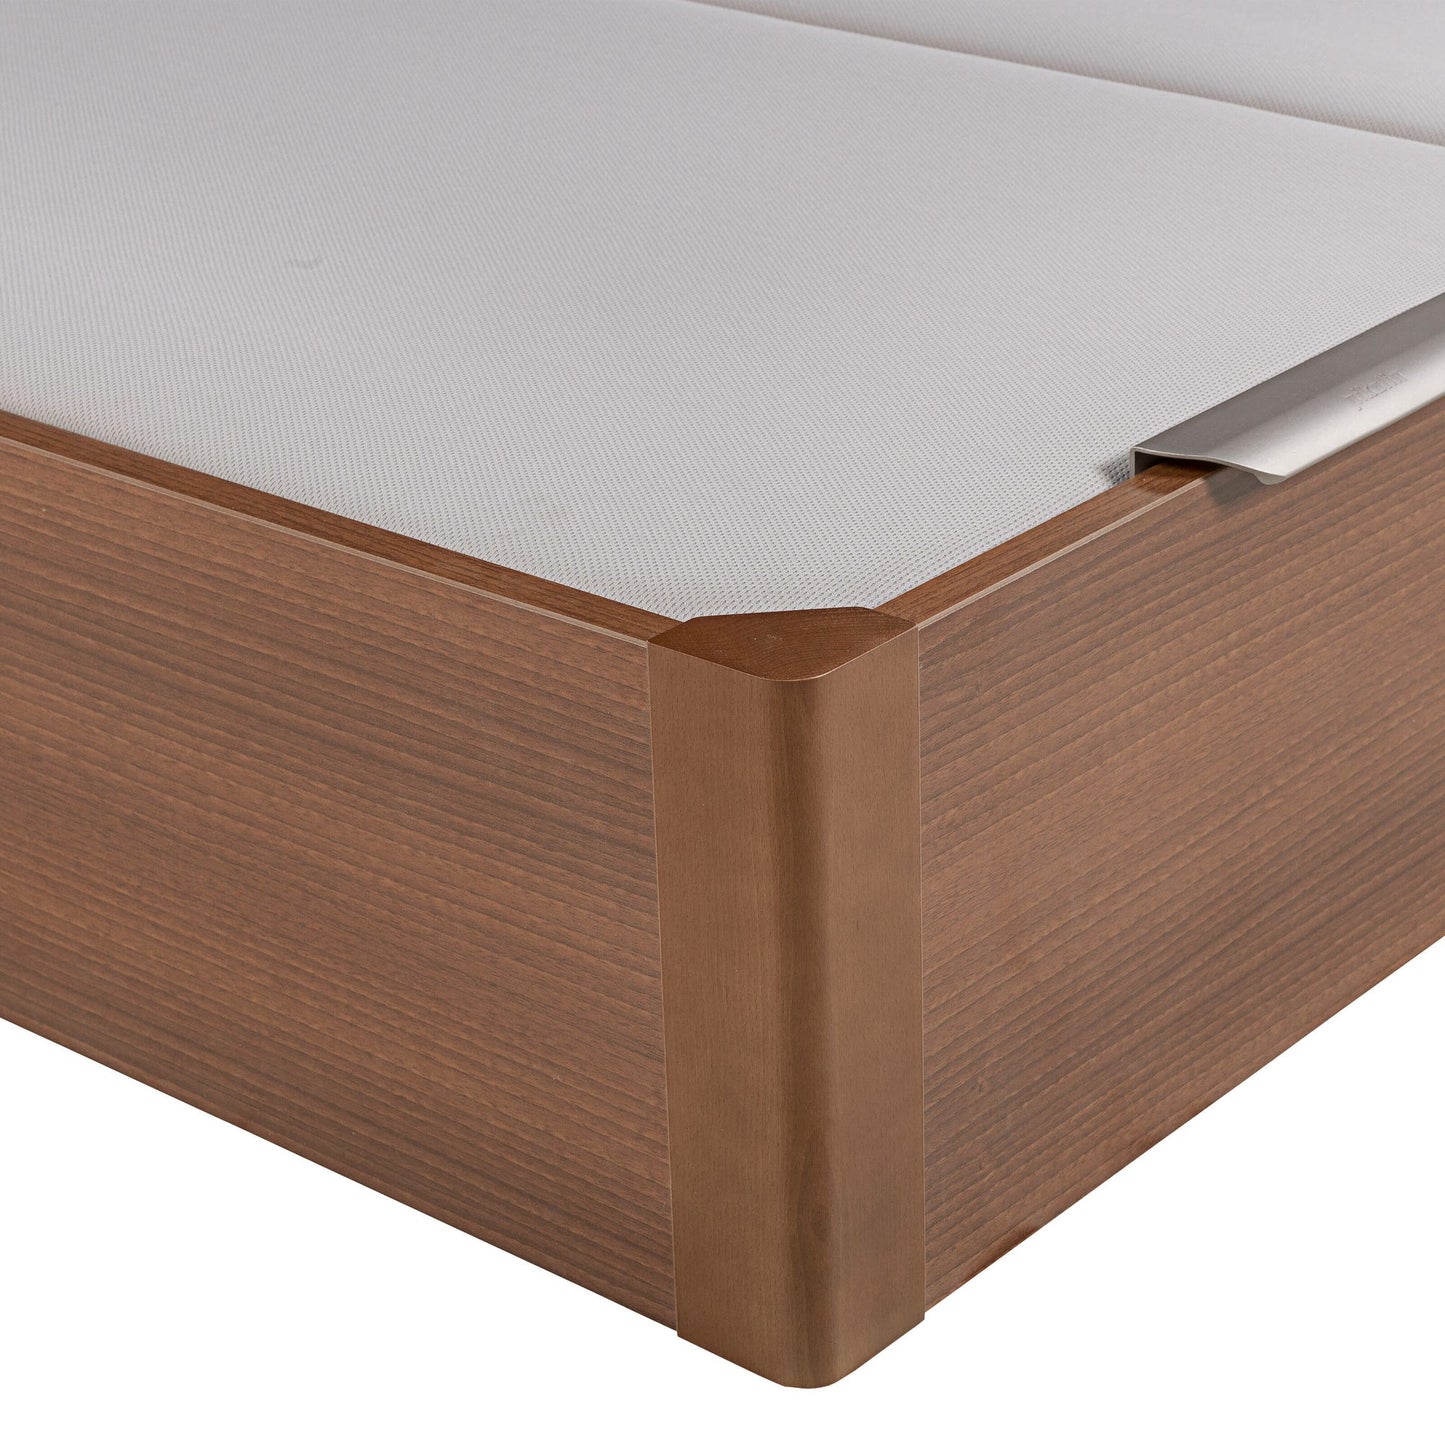 Canapé abatible de madera de tapa doble de color cerezo - DESIGN - 150x210